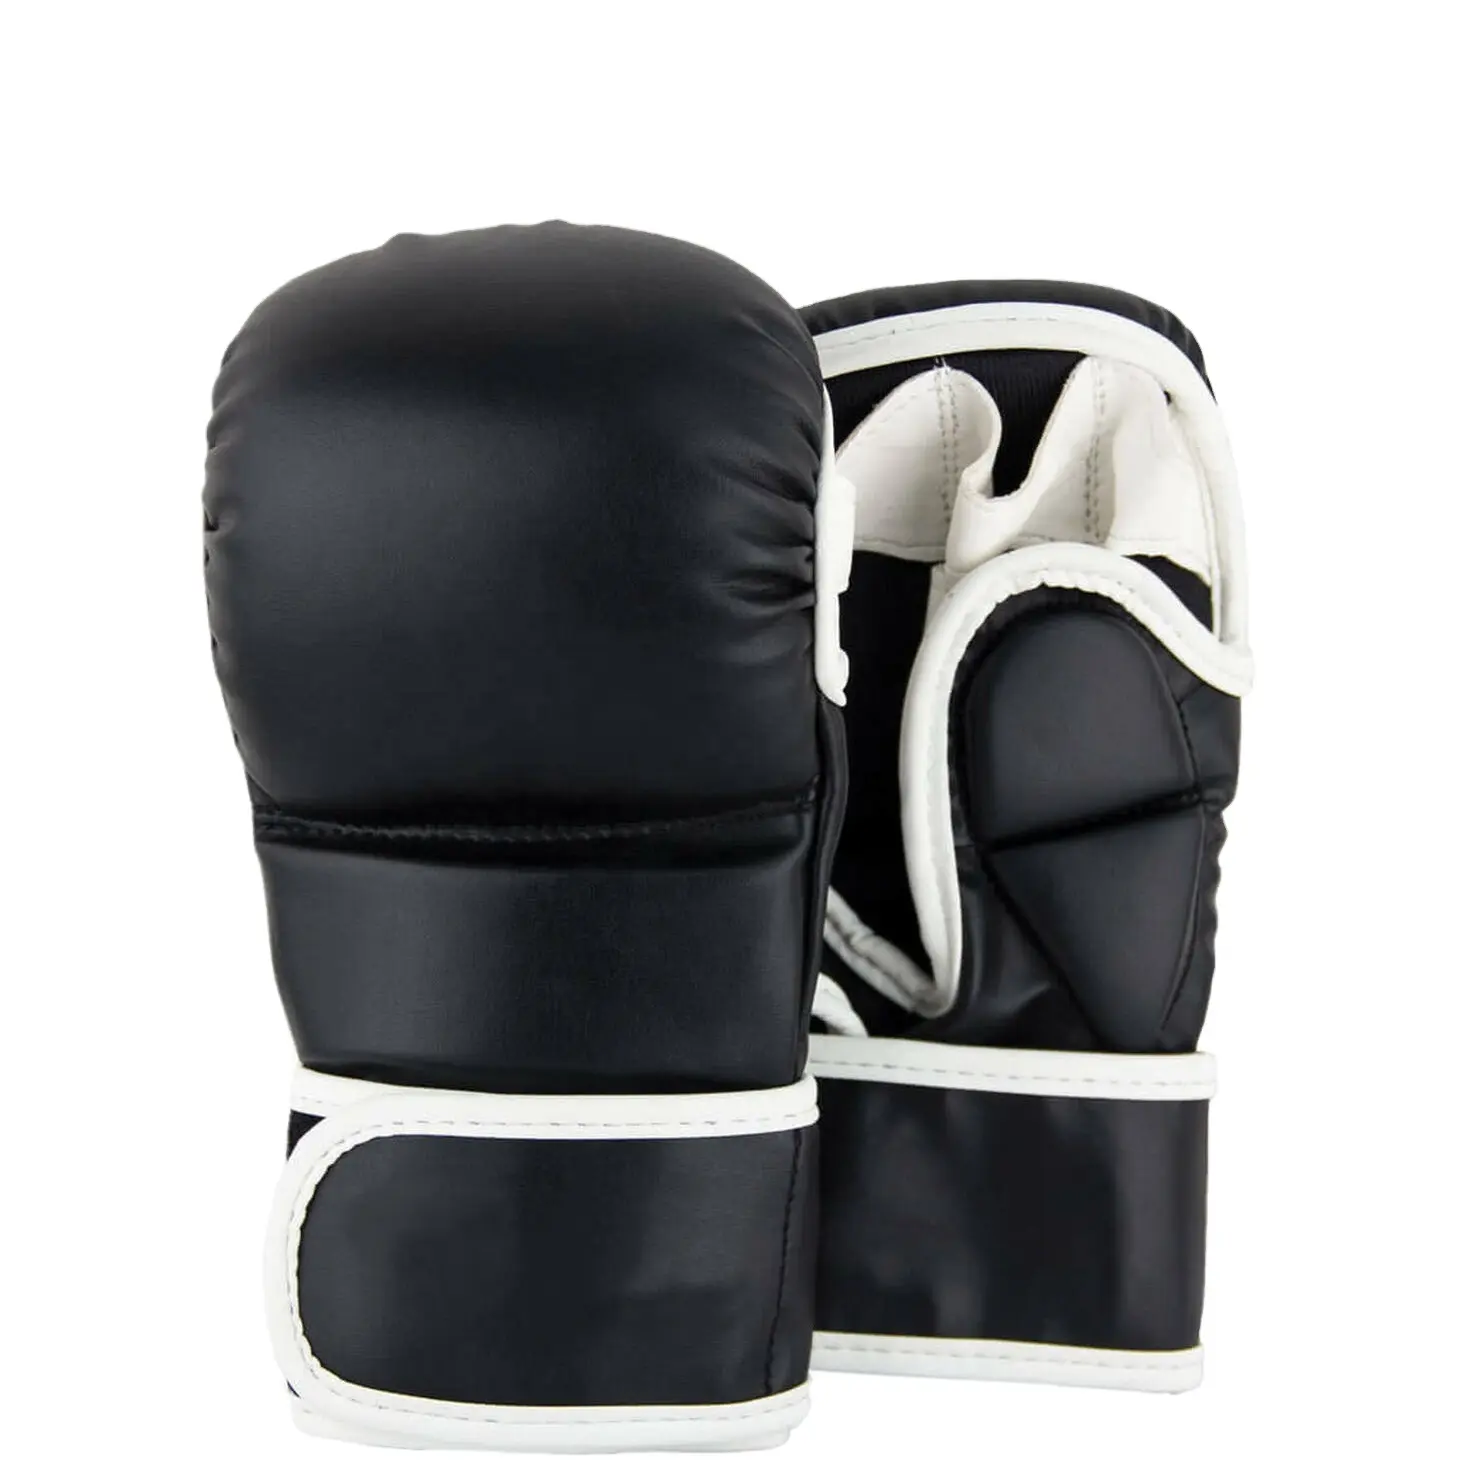 ถุงมือ MMA แบบกำหนดเองออกแบบของคุณเอง,ถุงมือ MMA ครึ่งนิ้วถุงมือมวยโลโก้ที่กำหนดเอง